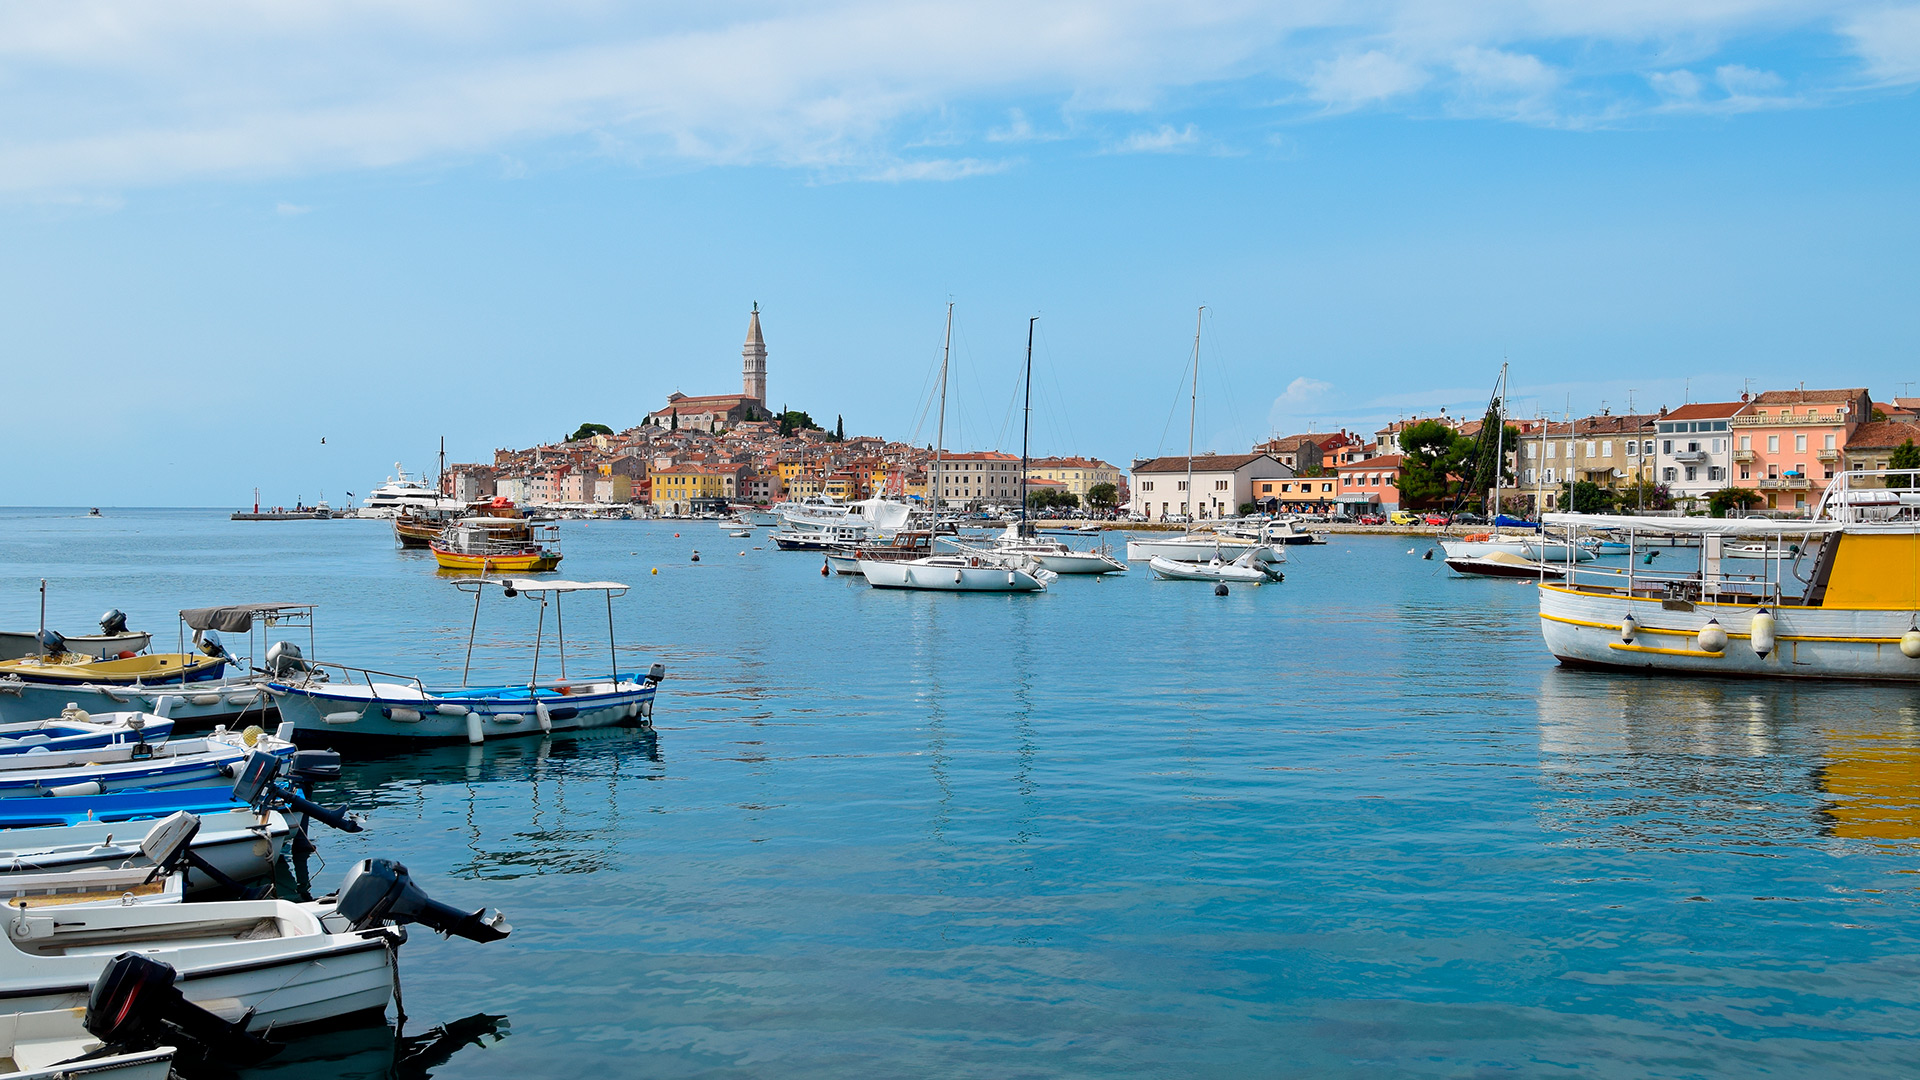 The city's harbour, Rovinj, Croatia - Adriatic sailing routes of SimpleSail